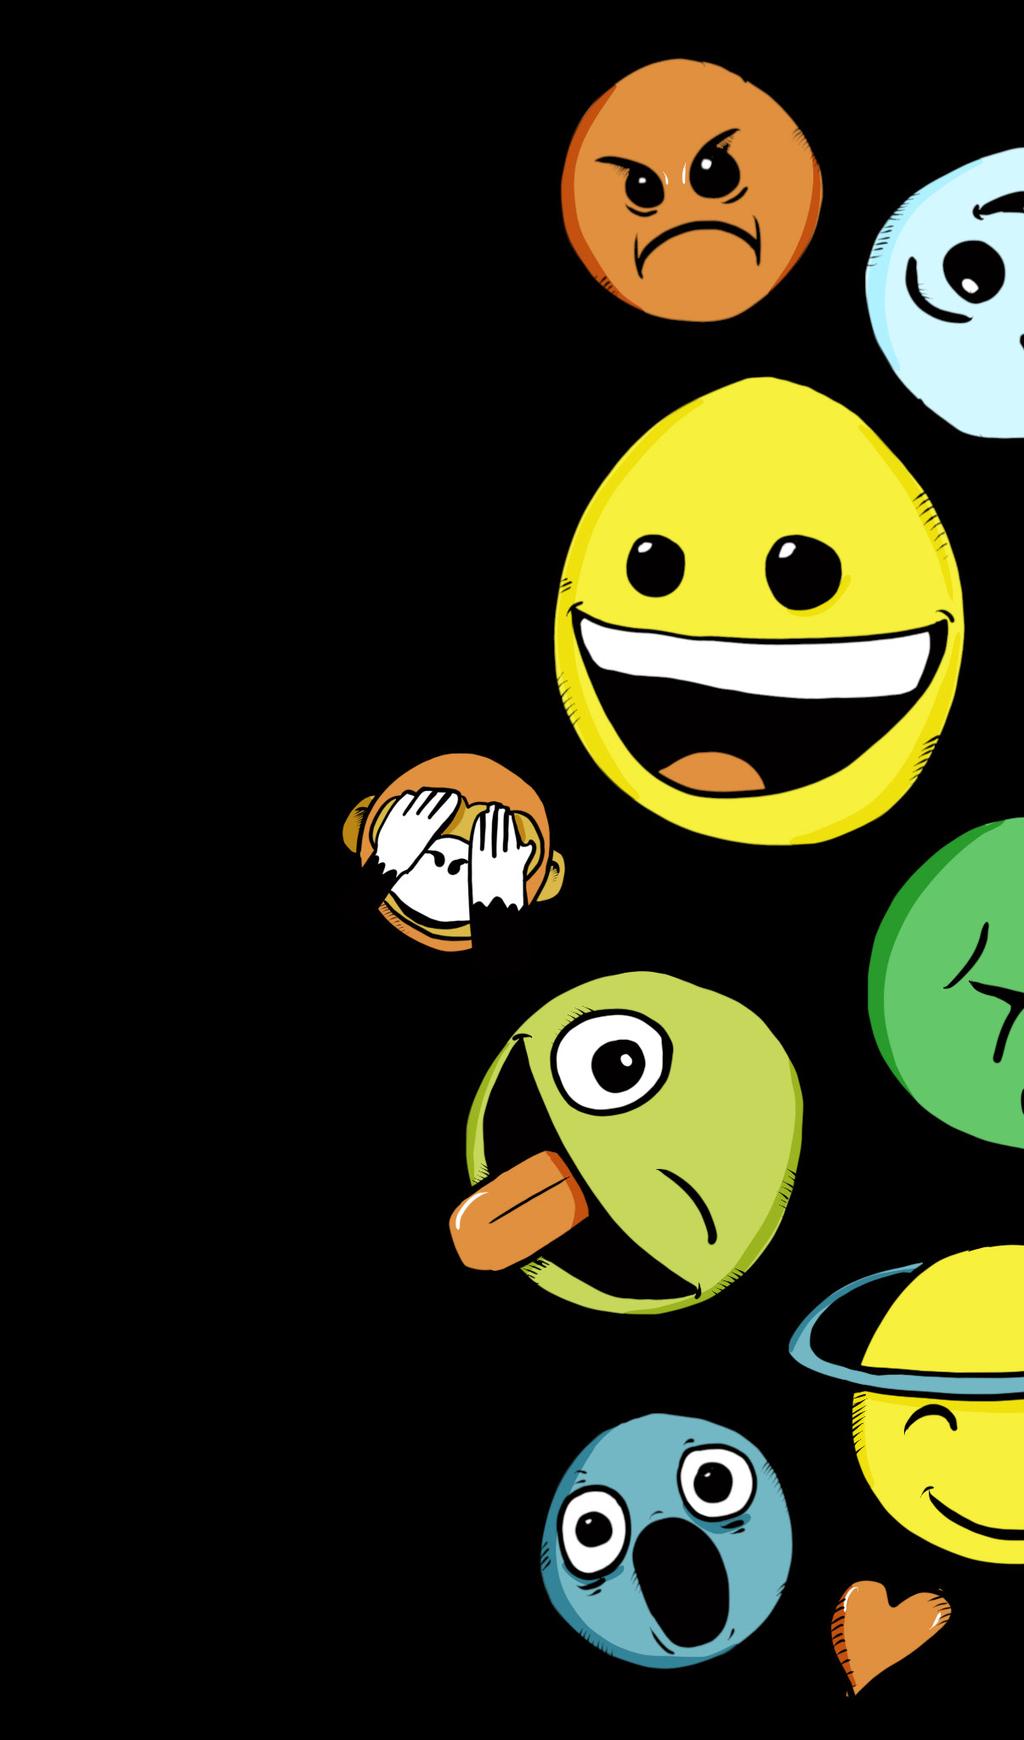 Emojis Man kann auch Emojis senden. Das ist Japanisch und bedeutet: Bild-Schrift-Zeichen. Man spricht Emoji: Emo-dschi. Emojis sind kleine Bilder.